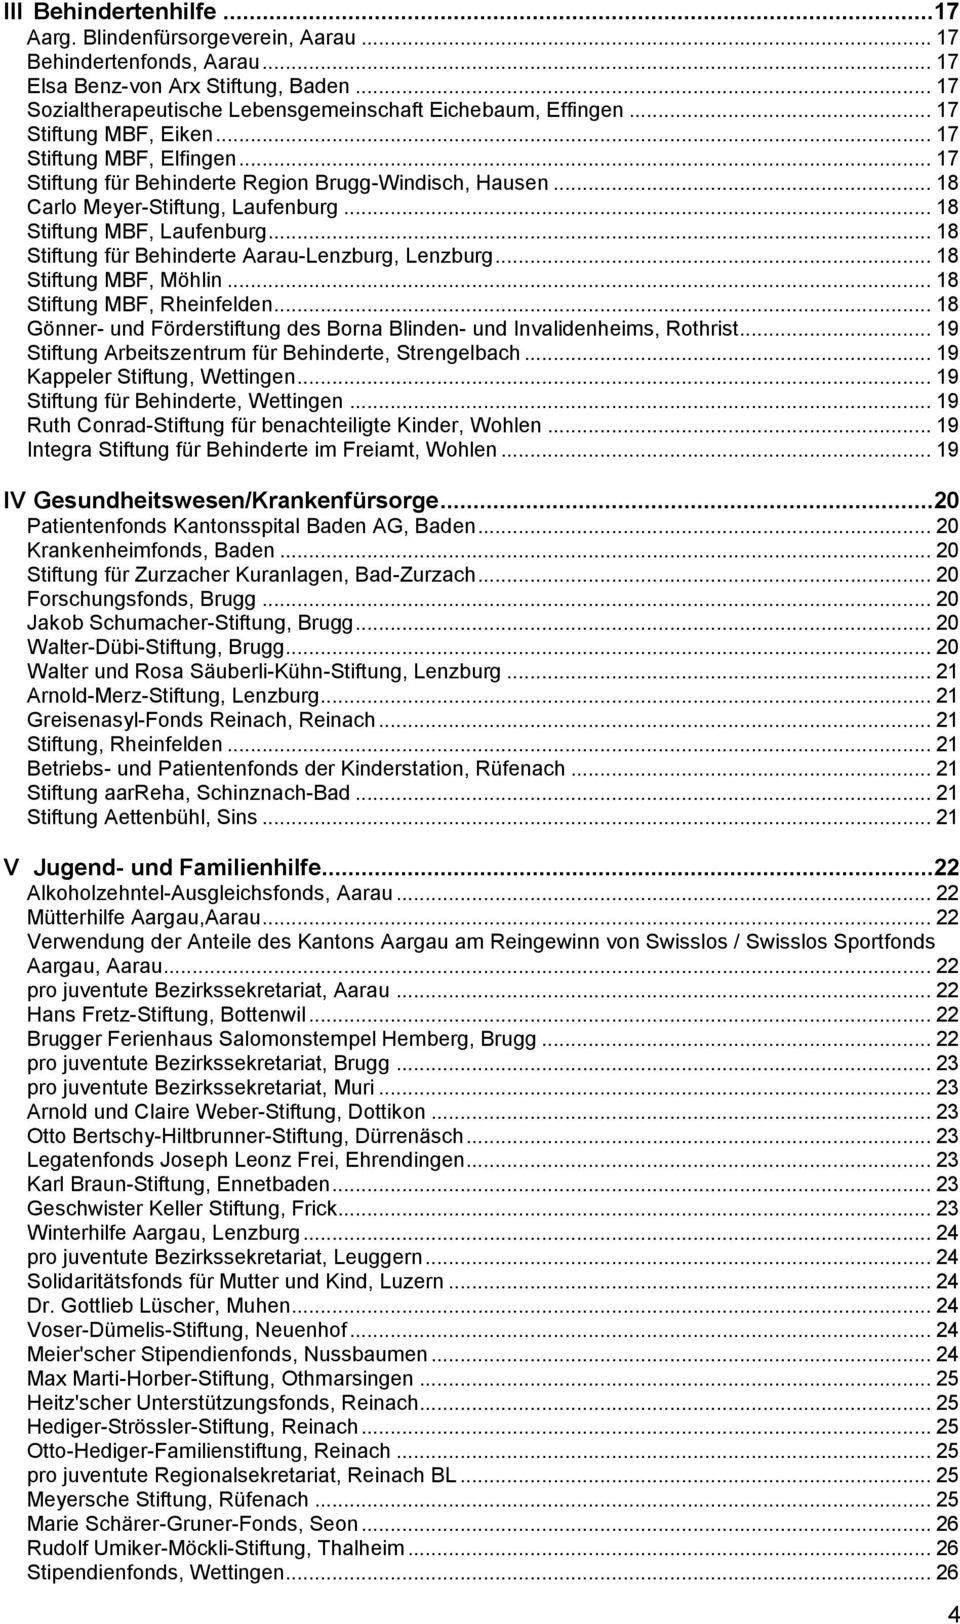 .. 18 Stiftung für Behinderte Aarau-Lenzburg, Lenzburg... 18 Stiftung MBF, Möhlin... 18 Stiftung MBF, Rheinfelden... 18 Gönner- und Förderstiftung des Borna Blinden- und Invalidenheims, Rothrist.